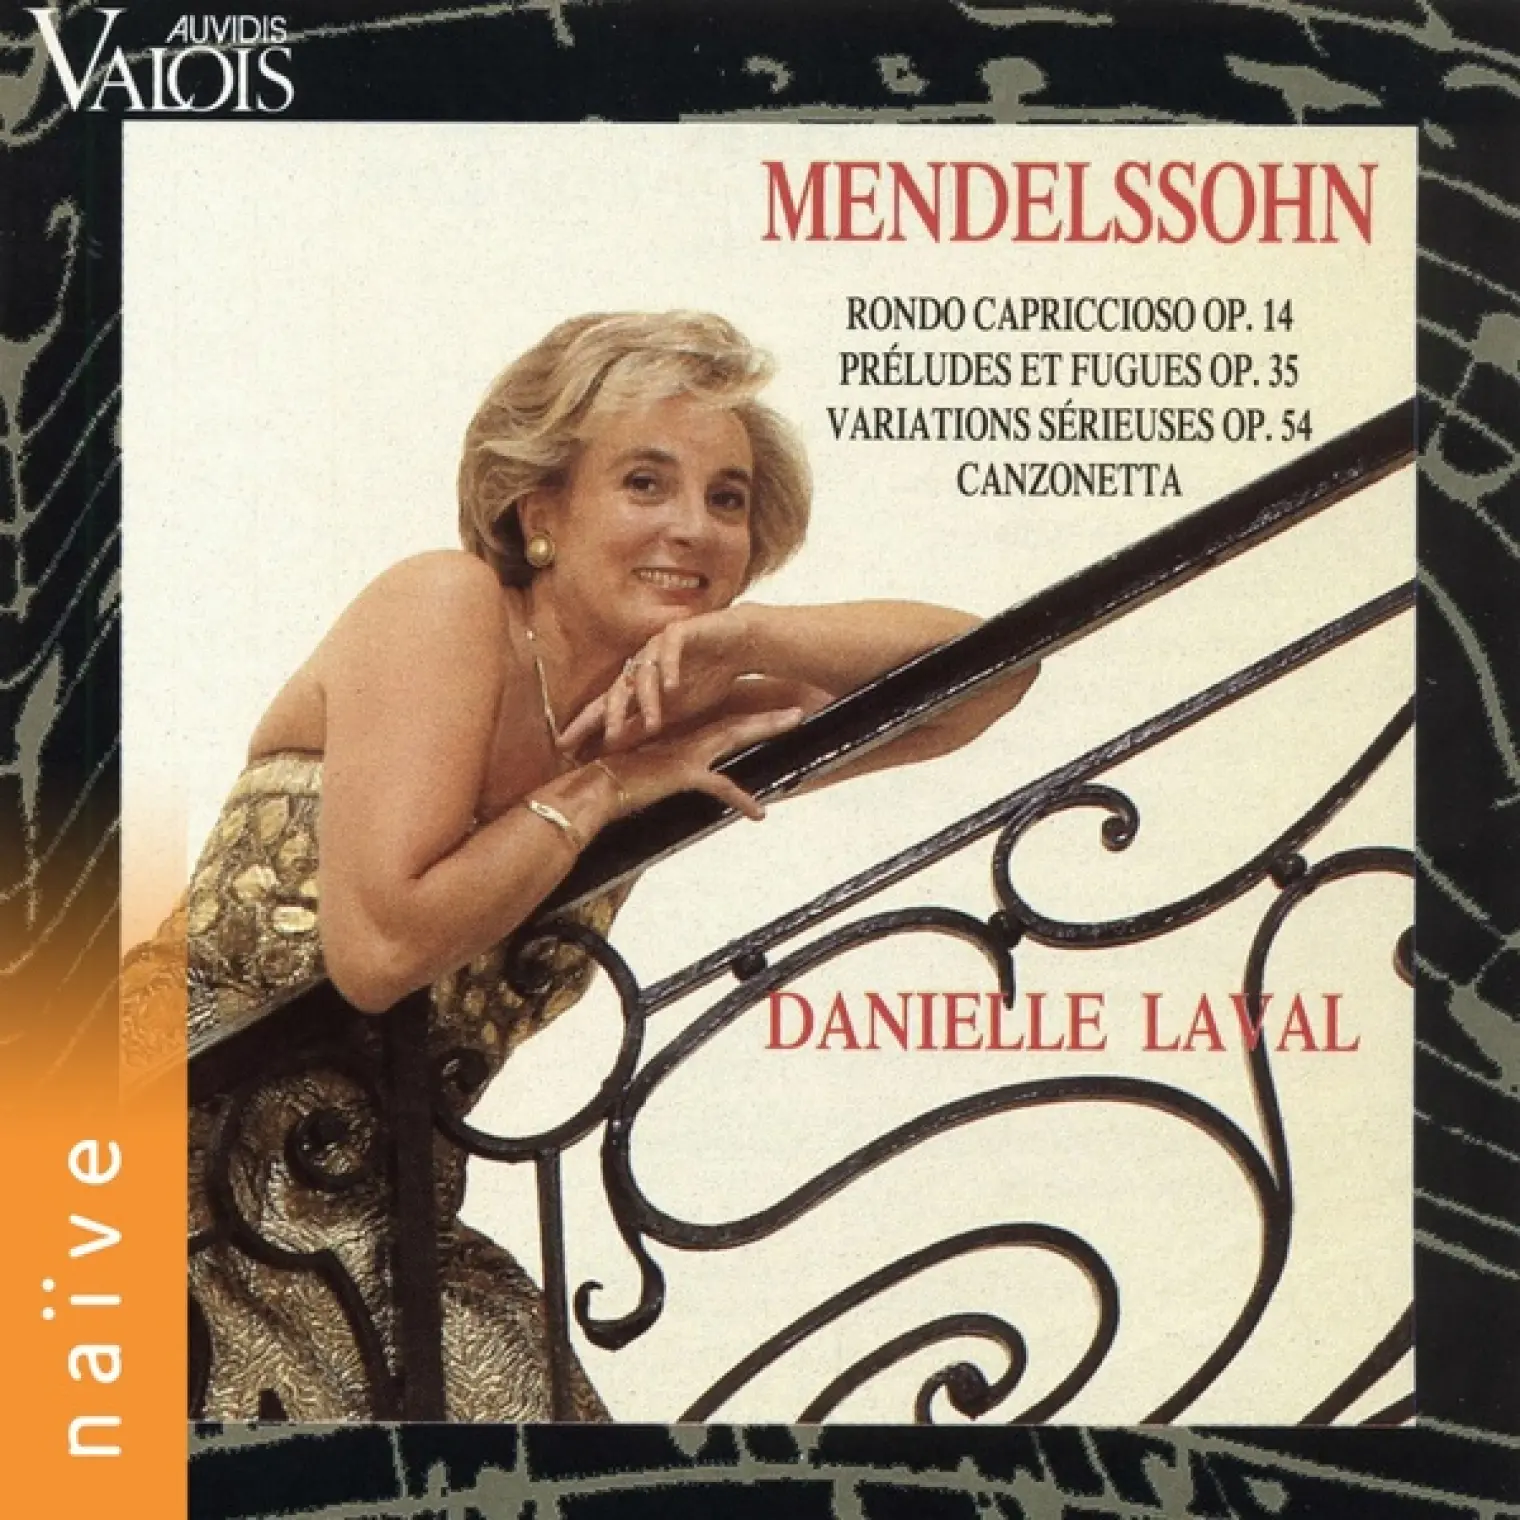 Mendelssohn: Rondo Capriccioso, Préludes et fugues, Variations sérieuses et Canzonetta -  Danielle Laval 